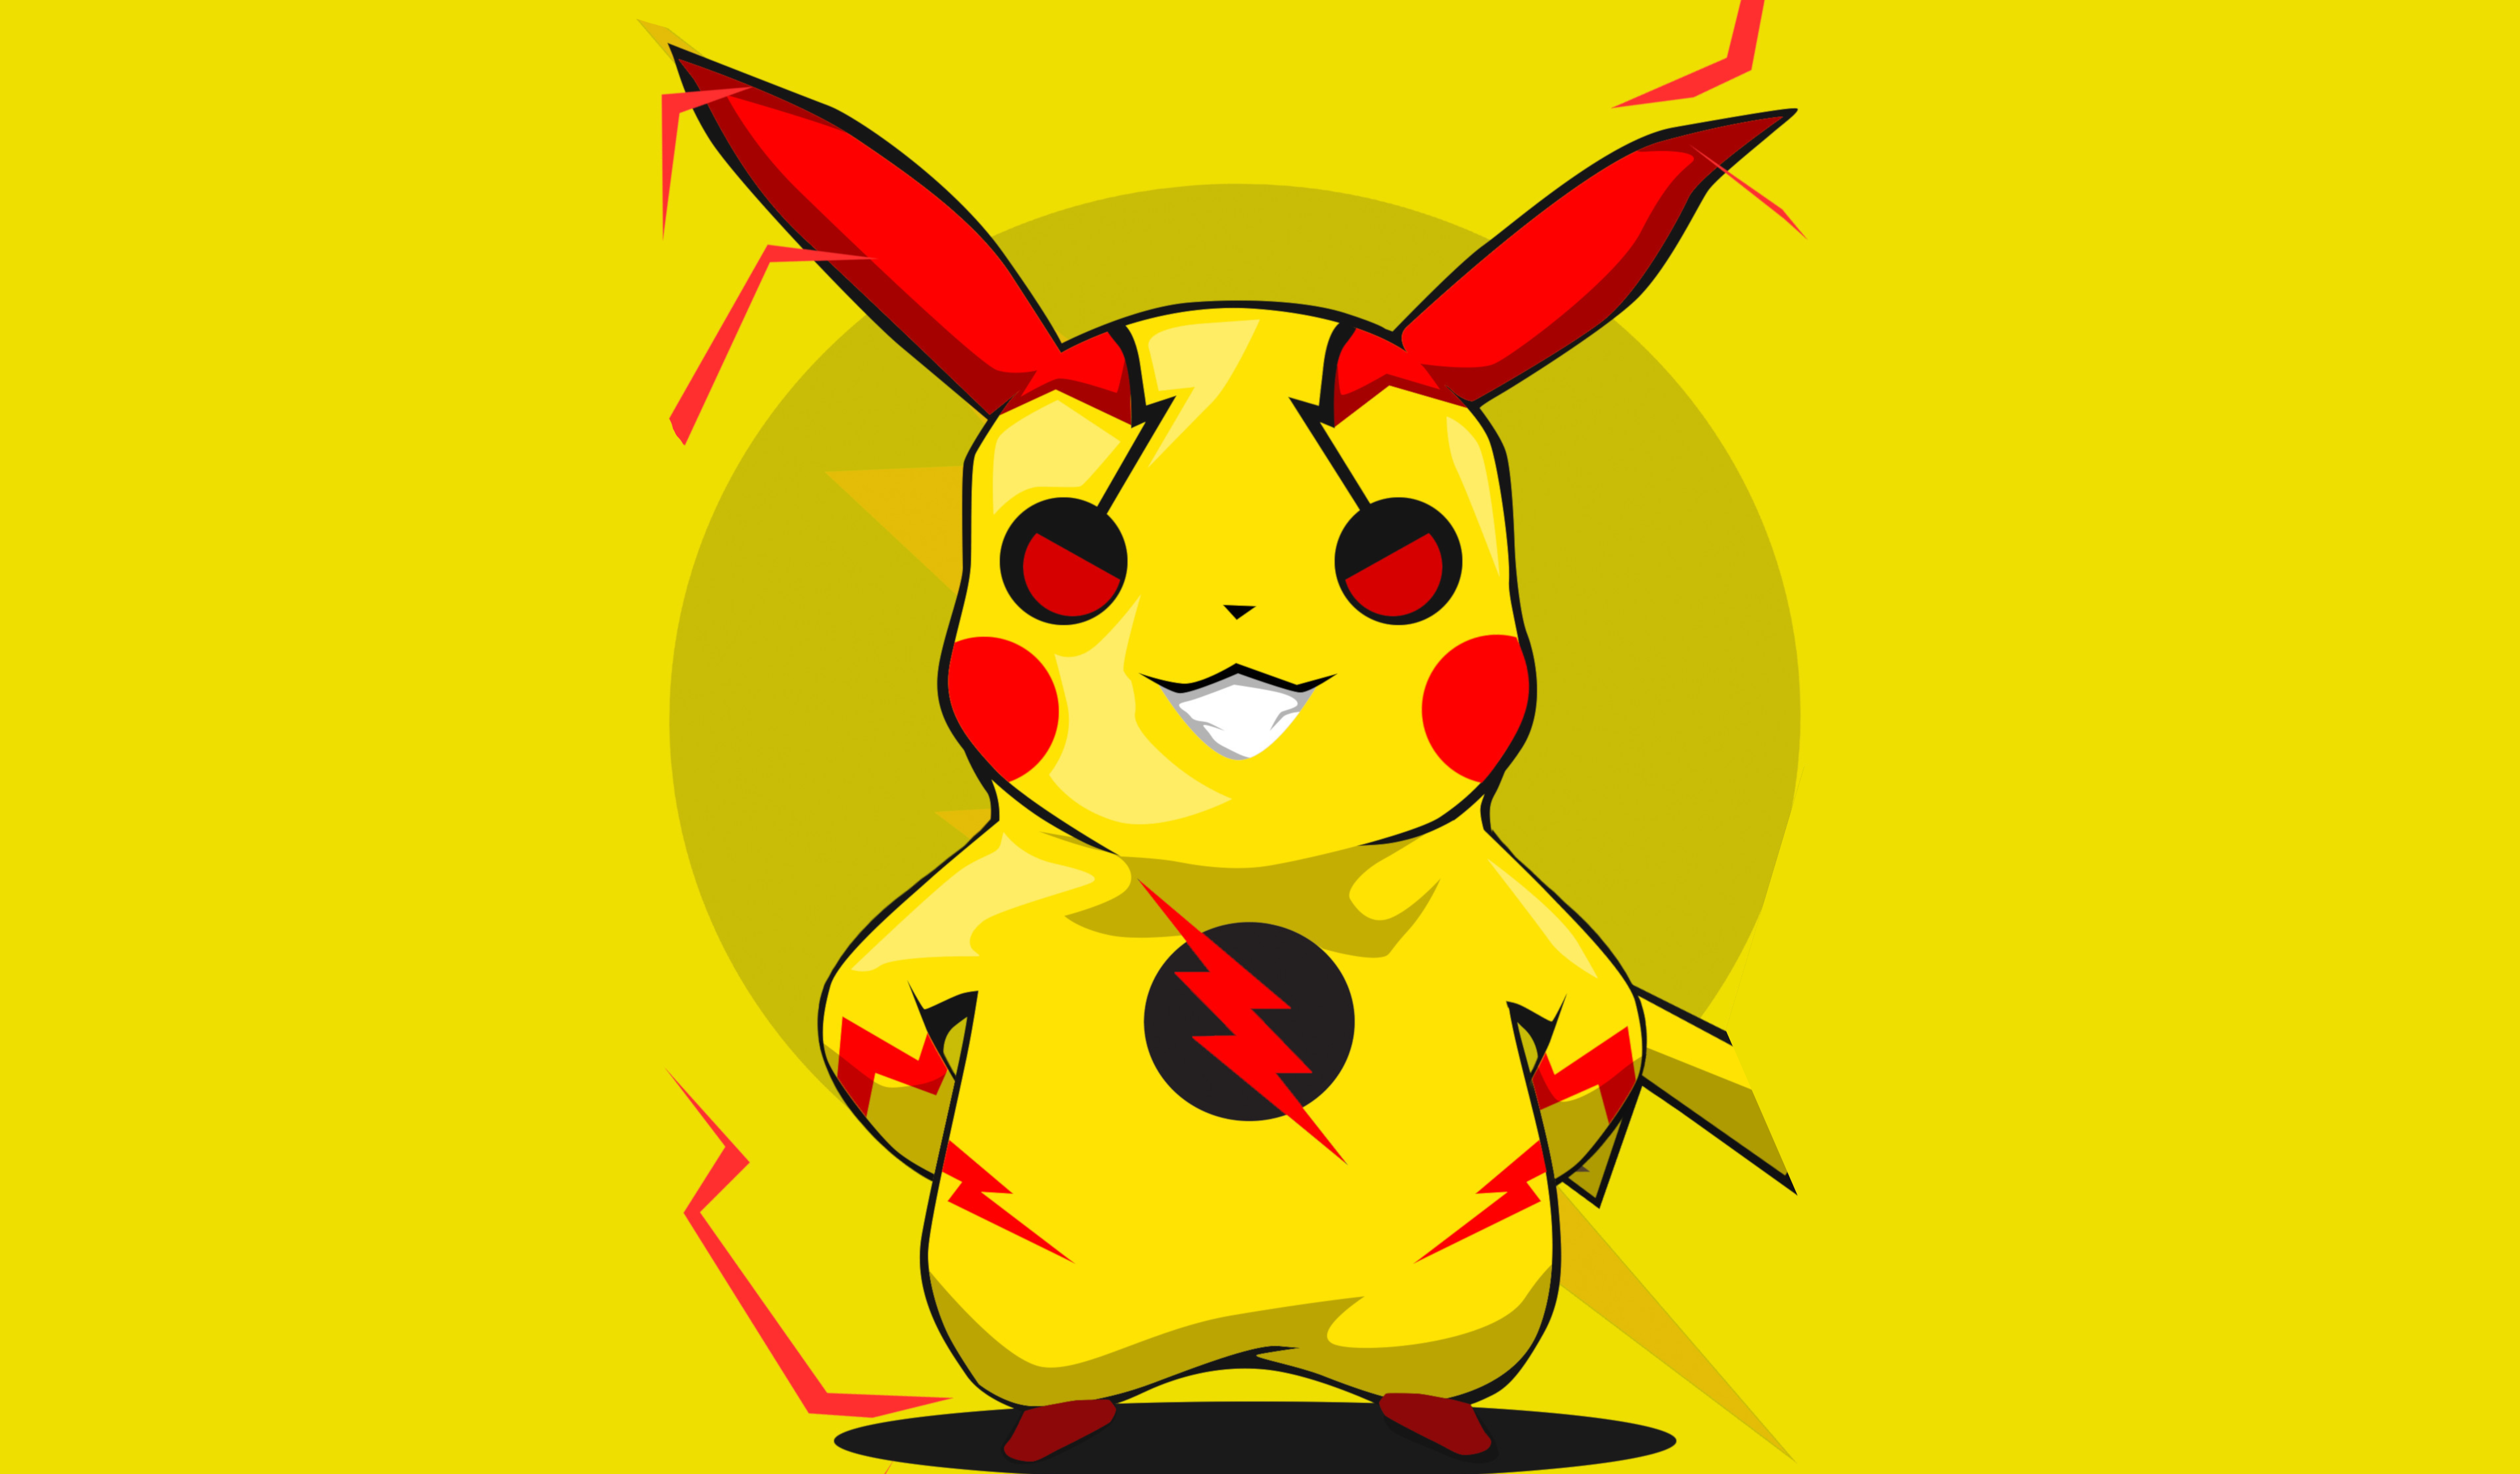 wallpaper di pikachu,cartone animato,rosso,giallo,cartone animato,illustrazione